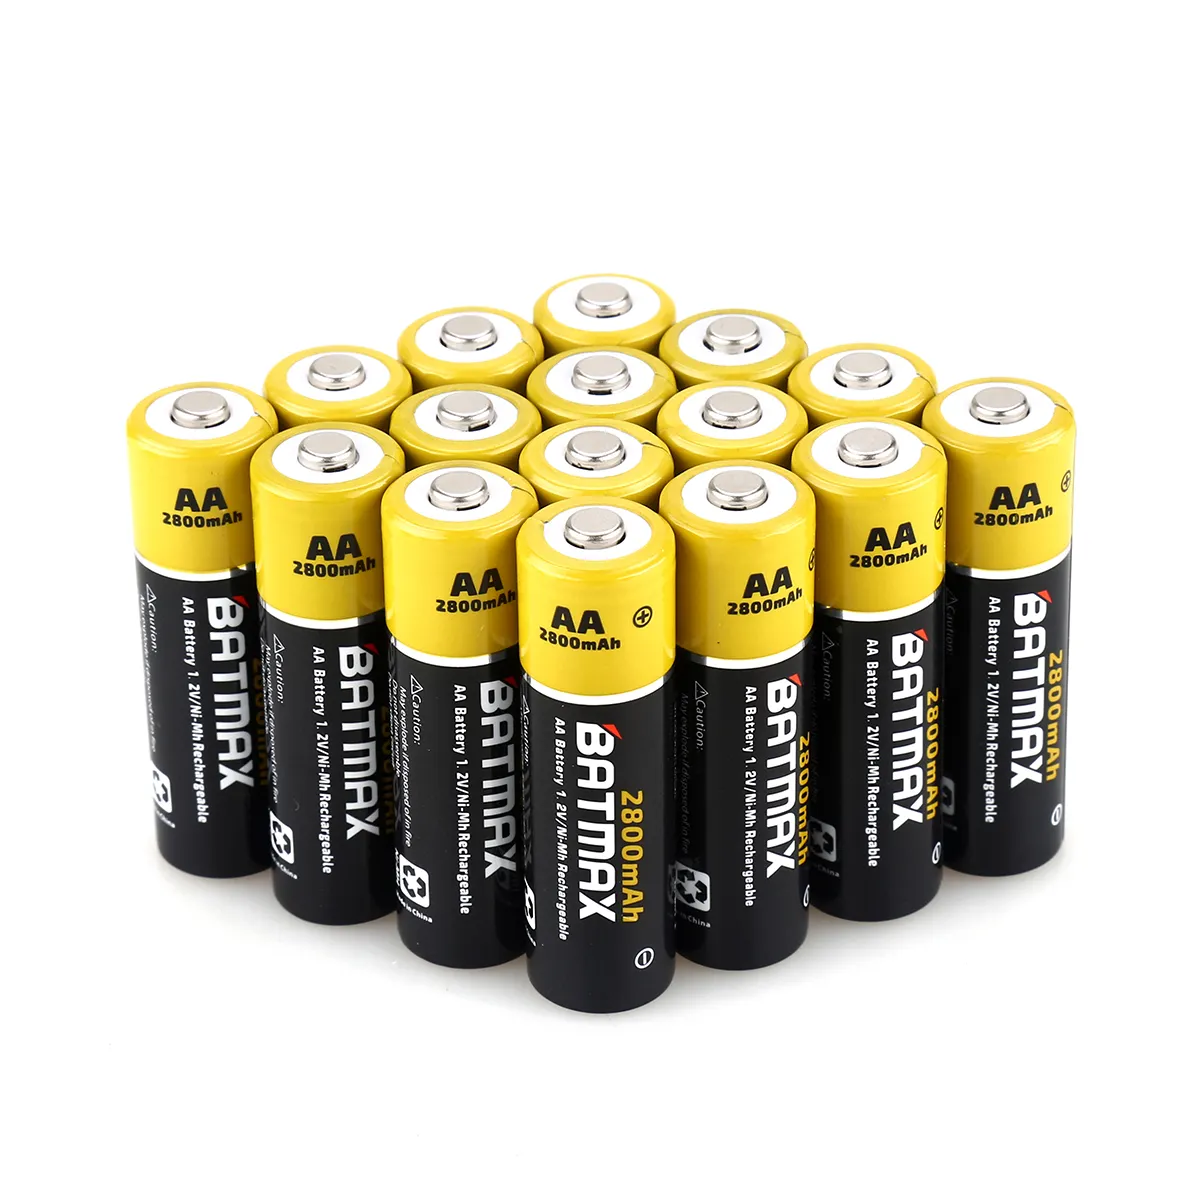 Kuulaa — batterie rechargeable 1.2V 2800mAh, batteries de remplacement BATMAX, lampe torche, lecteur MP3, pour montres, jouets, remplace Ni-Mh batterie